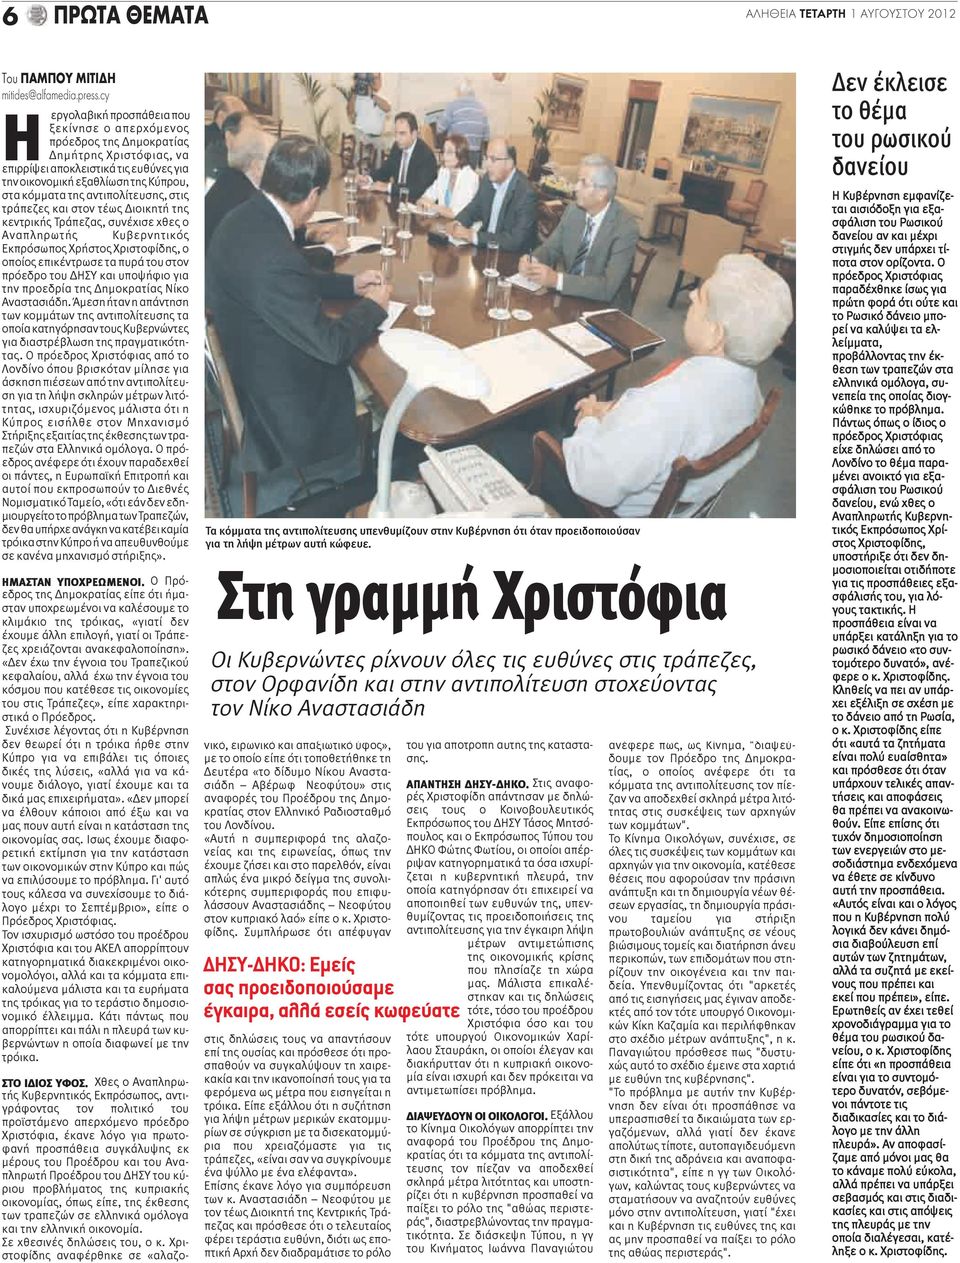 αντιπολίτευσης, στις τράπεζες και στον τέως Διοικητή της κεντρικής Τράπεζας, συνέχισε χθες ο Αναπληρωτής Κυβερνητικός Εκπρόσωπος Χρήστος Χριστοφίδης, ο οποίος επικέντρωσε τα πυρά του στον πρόεδρο του